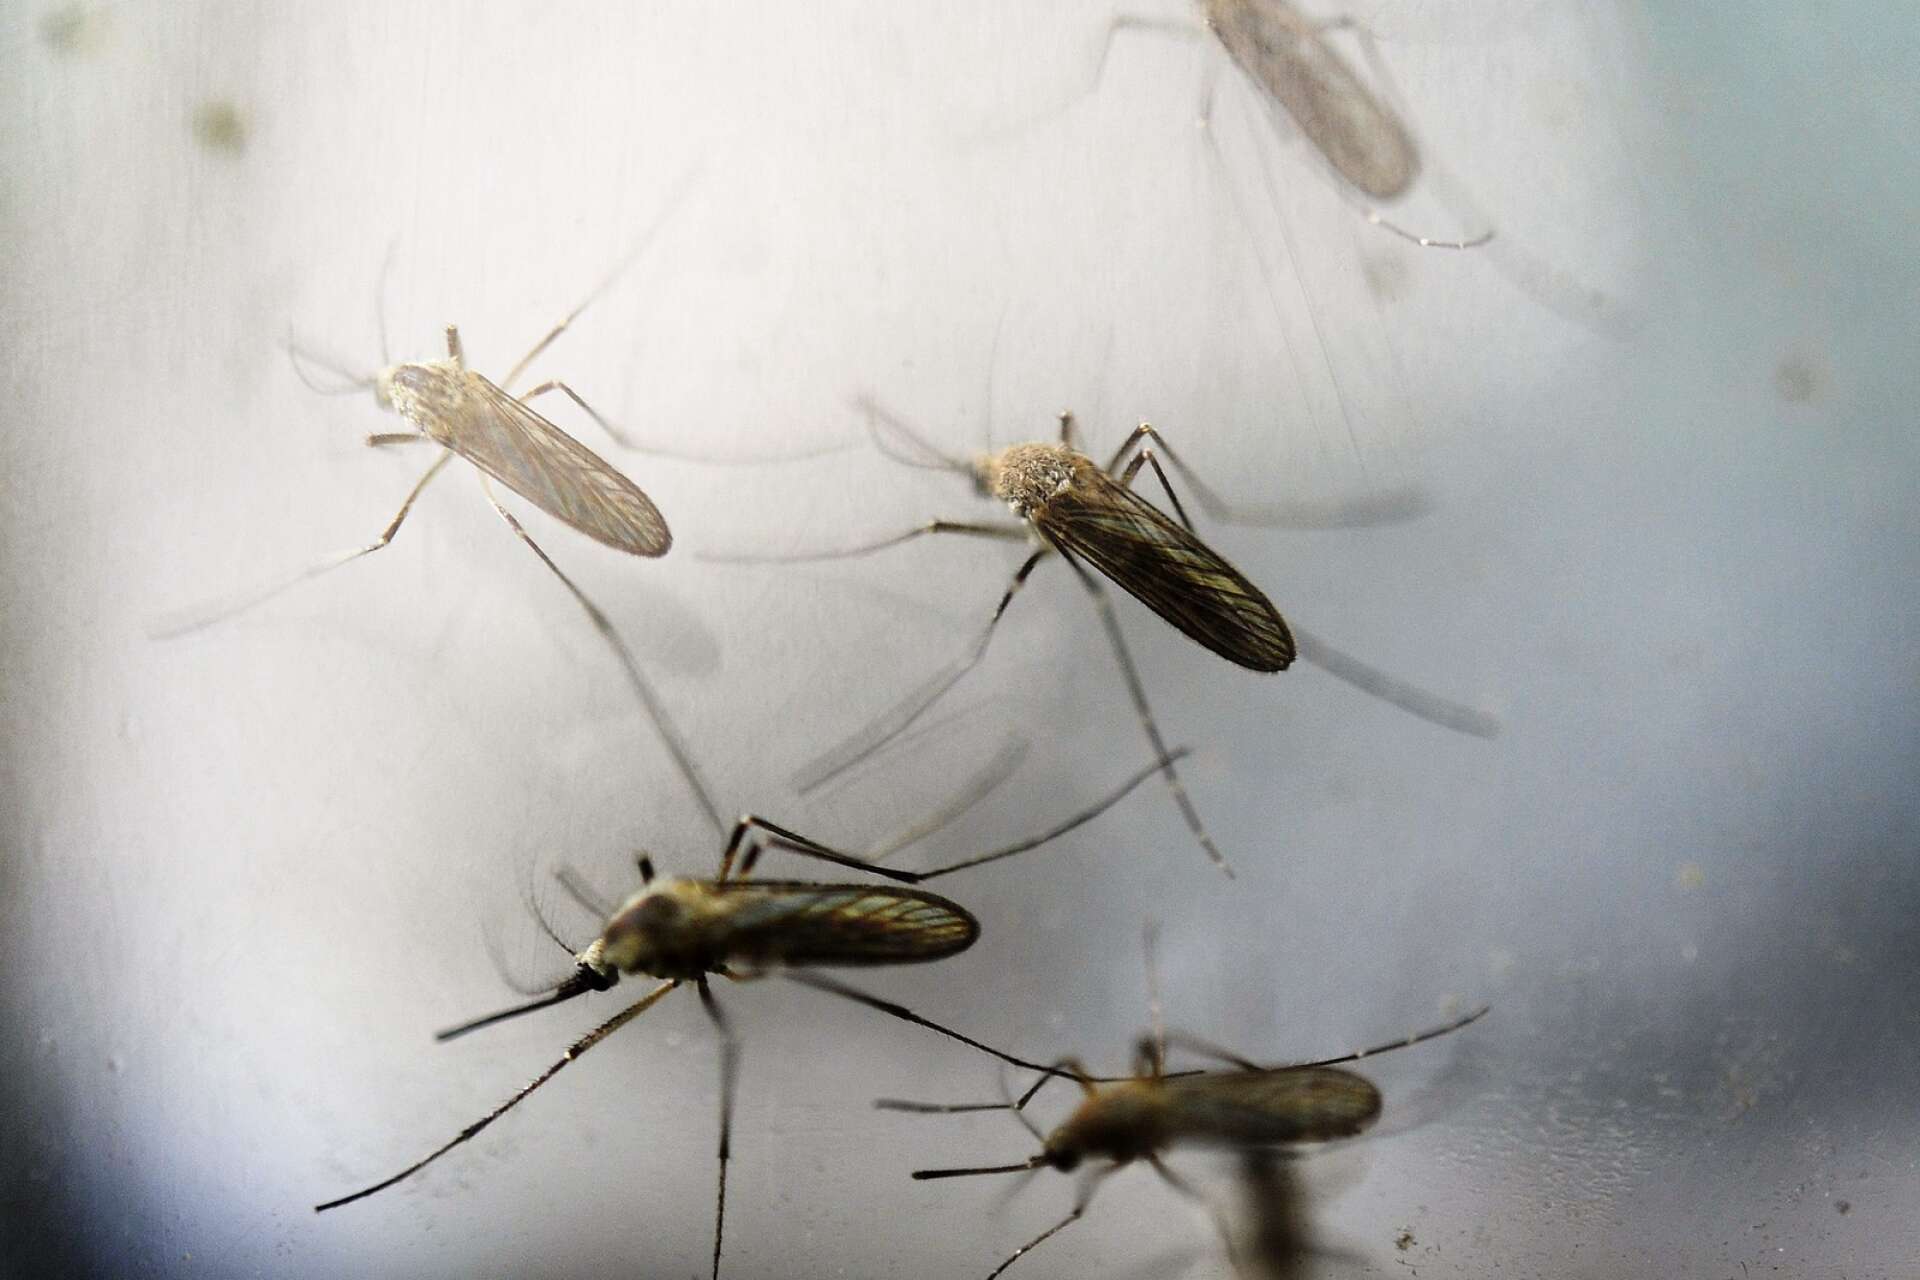 Fjolårets lyckade myggbekämpning kan bli verklighet även 2021.